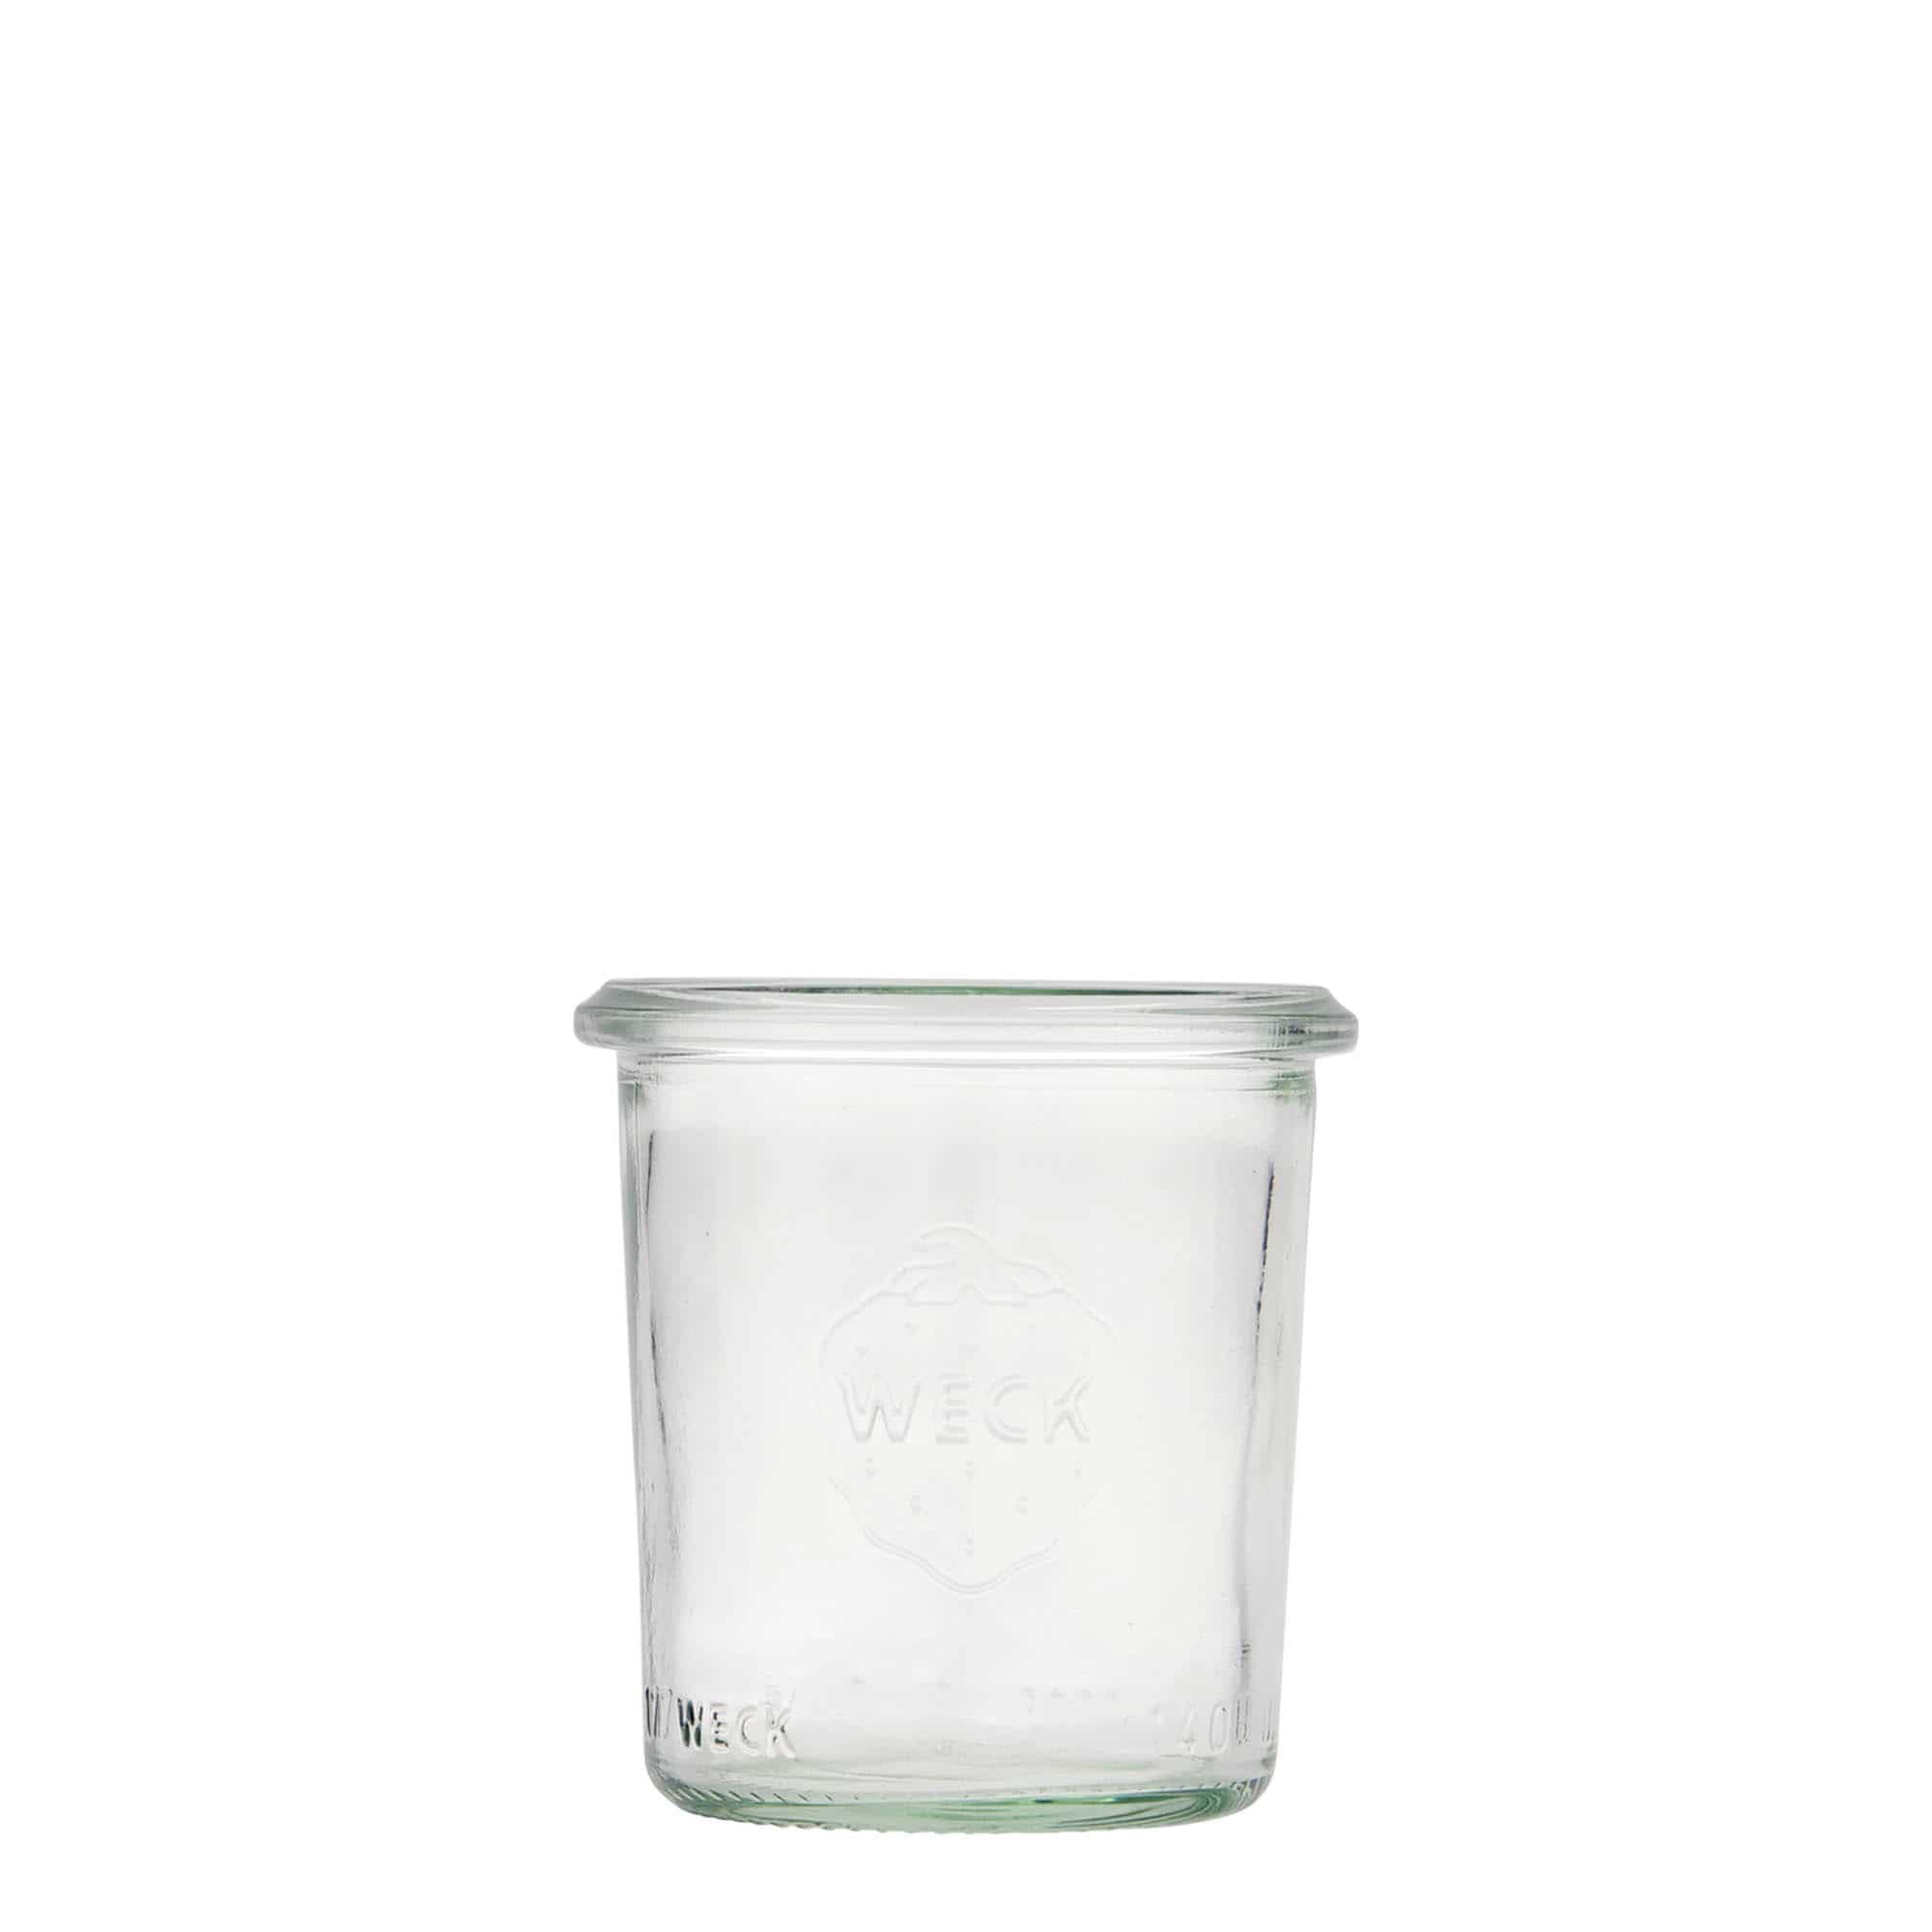 140 ml-es WECK befőttesüveg, szájnyílás: Kerek perem